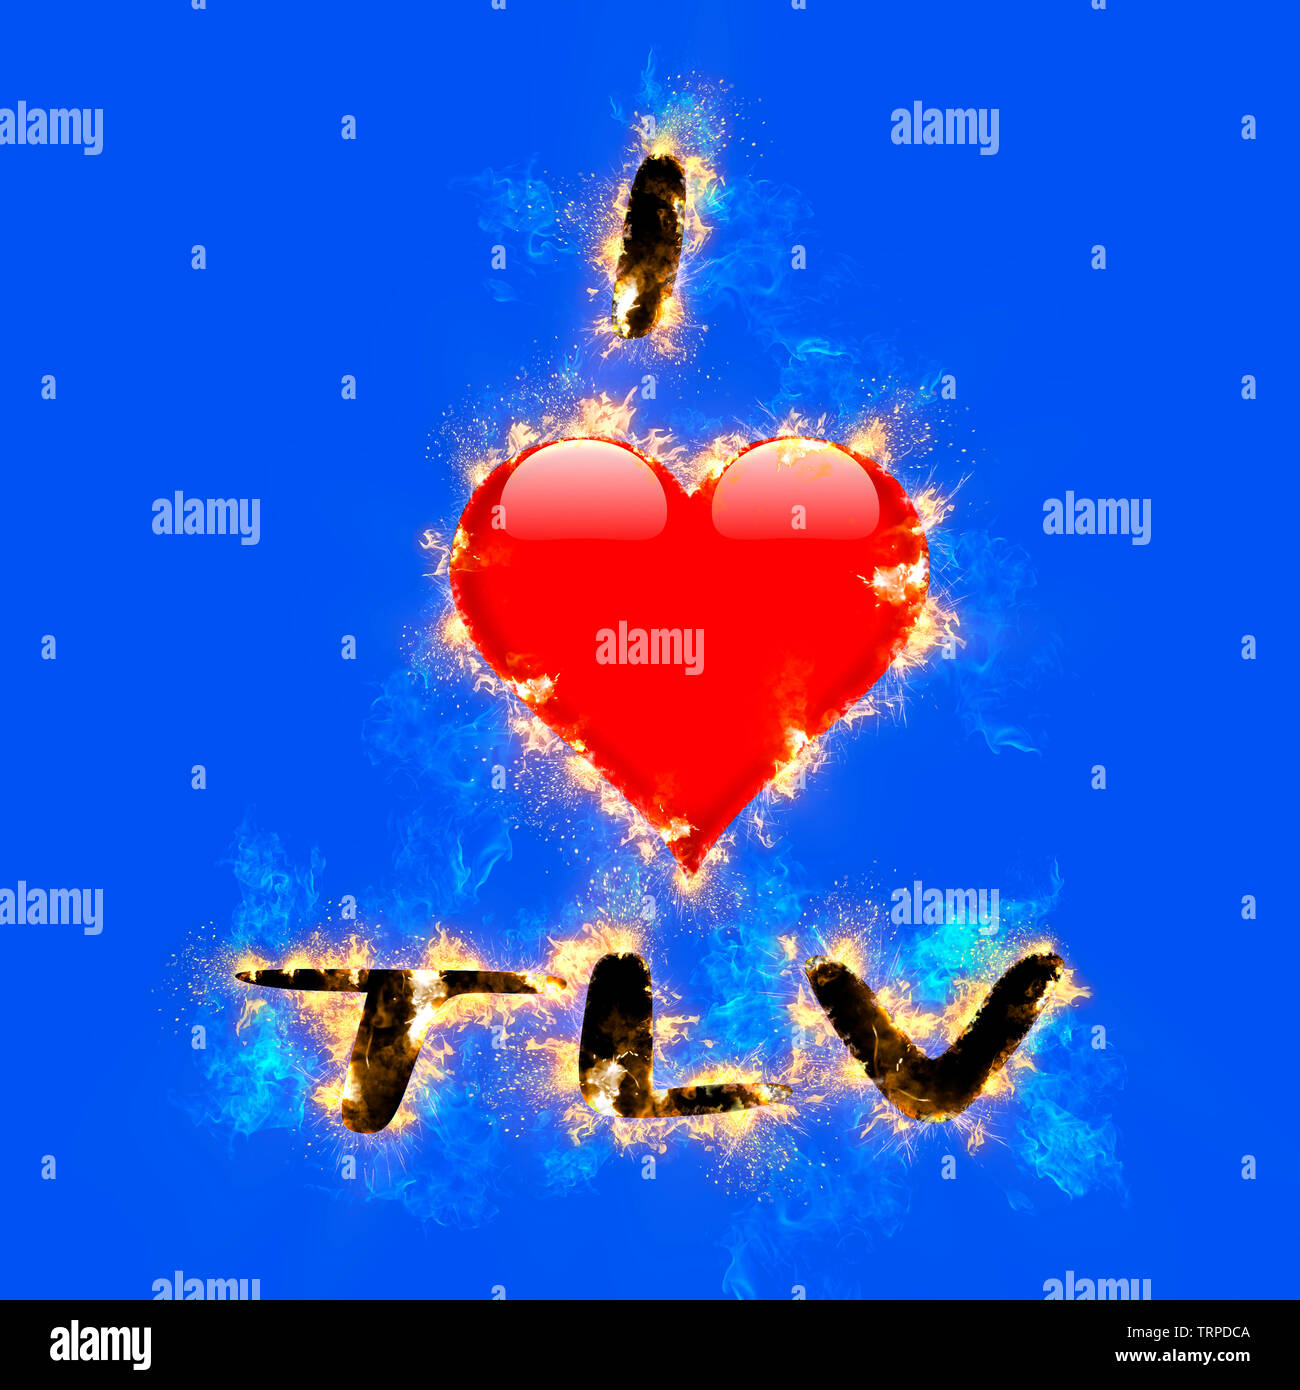 Migliorate digitalmente immagine di io amo TLV (Tel Aviv, Israele) con una fiammante a forma di cuore sulla grafica di sfondo blu Foto Stock